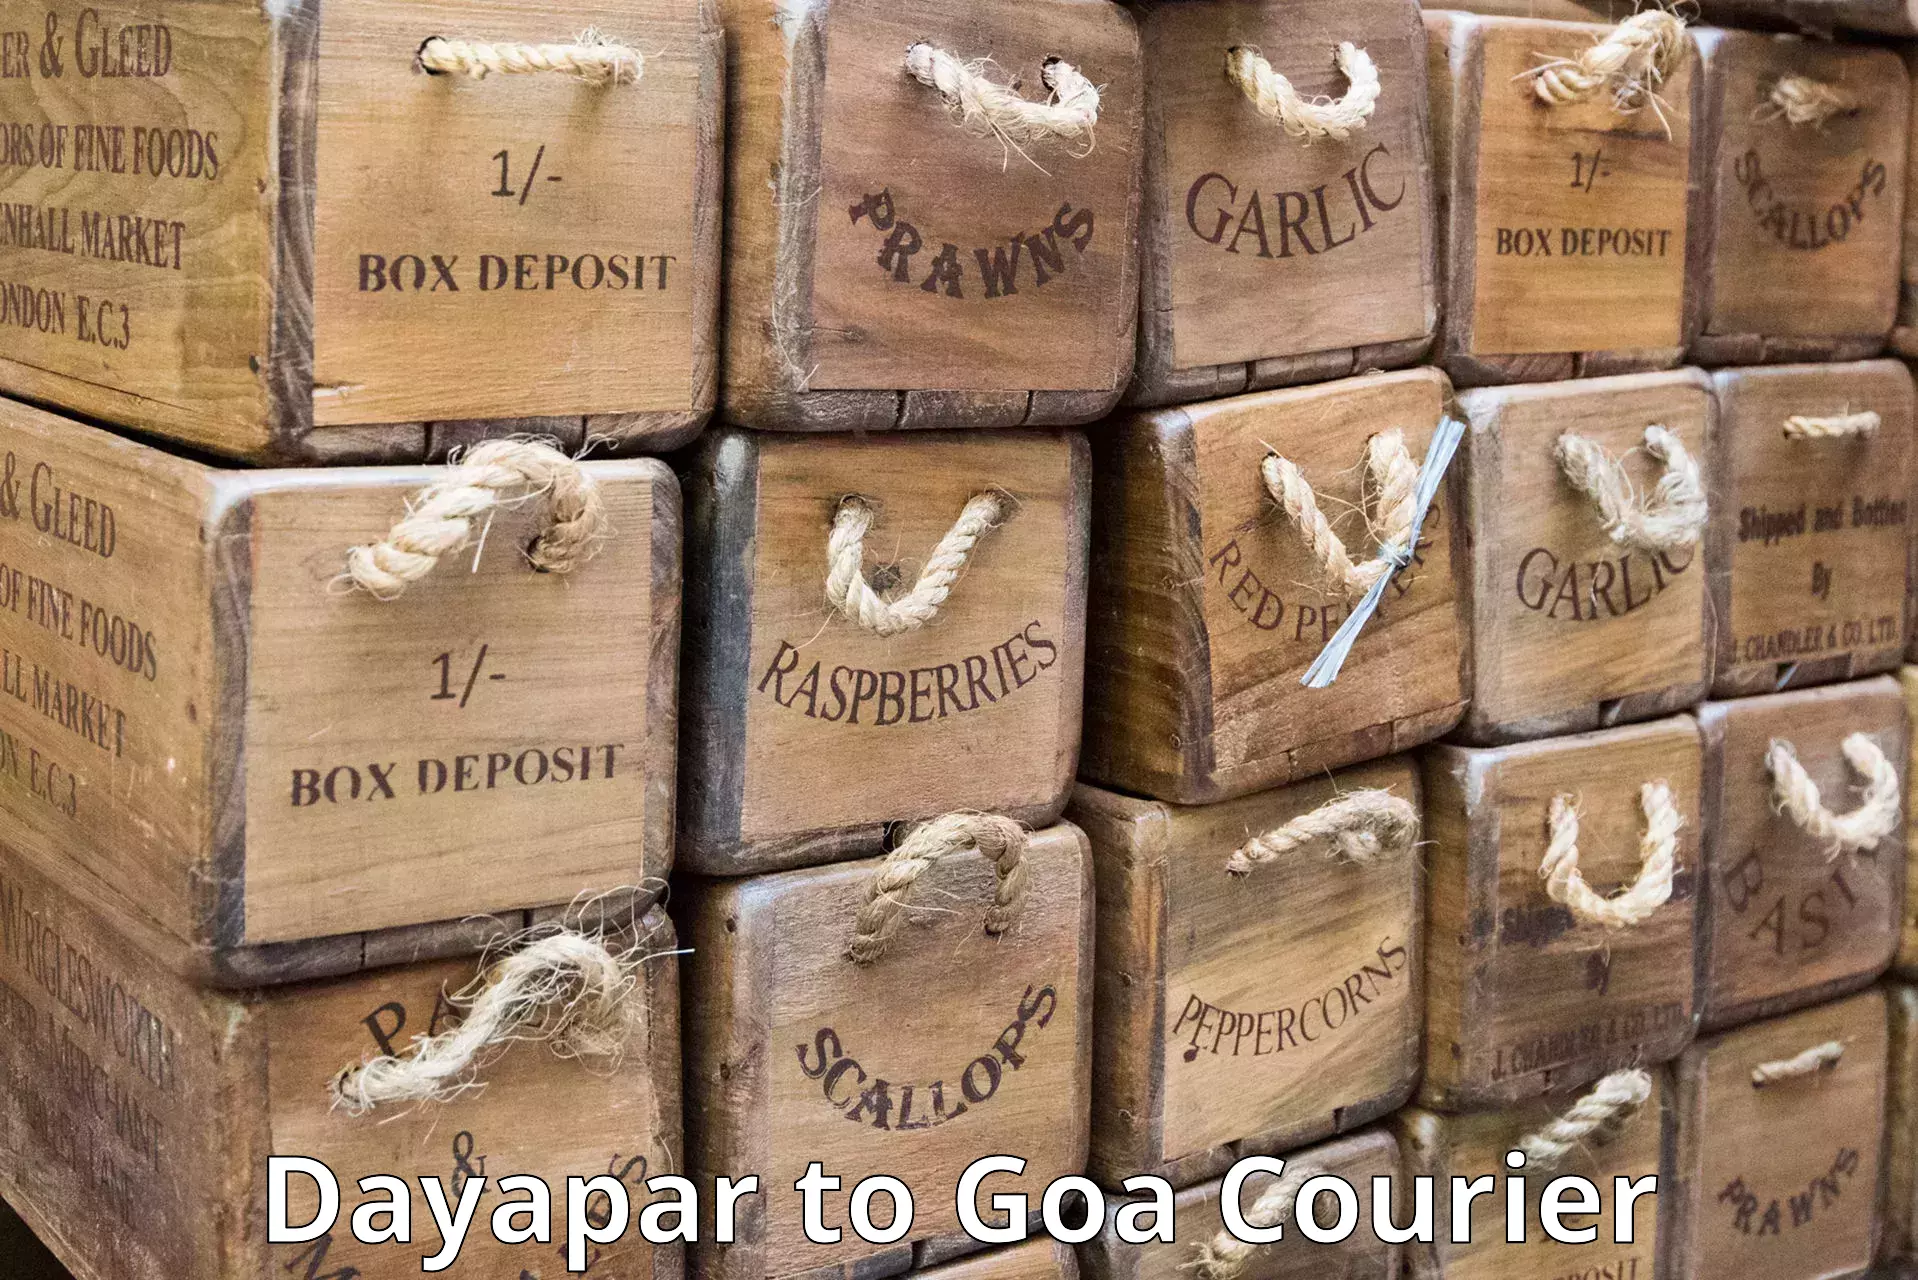 24/7 shipping services Dayapar to Goa